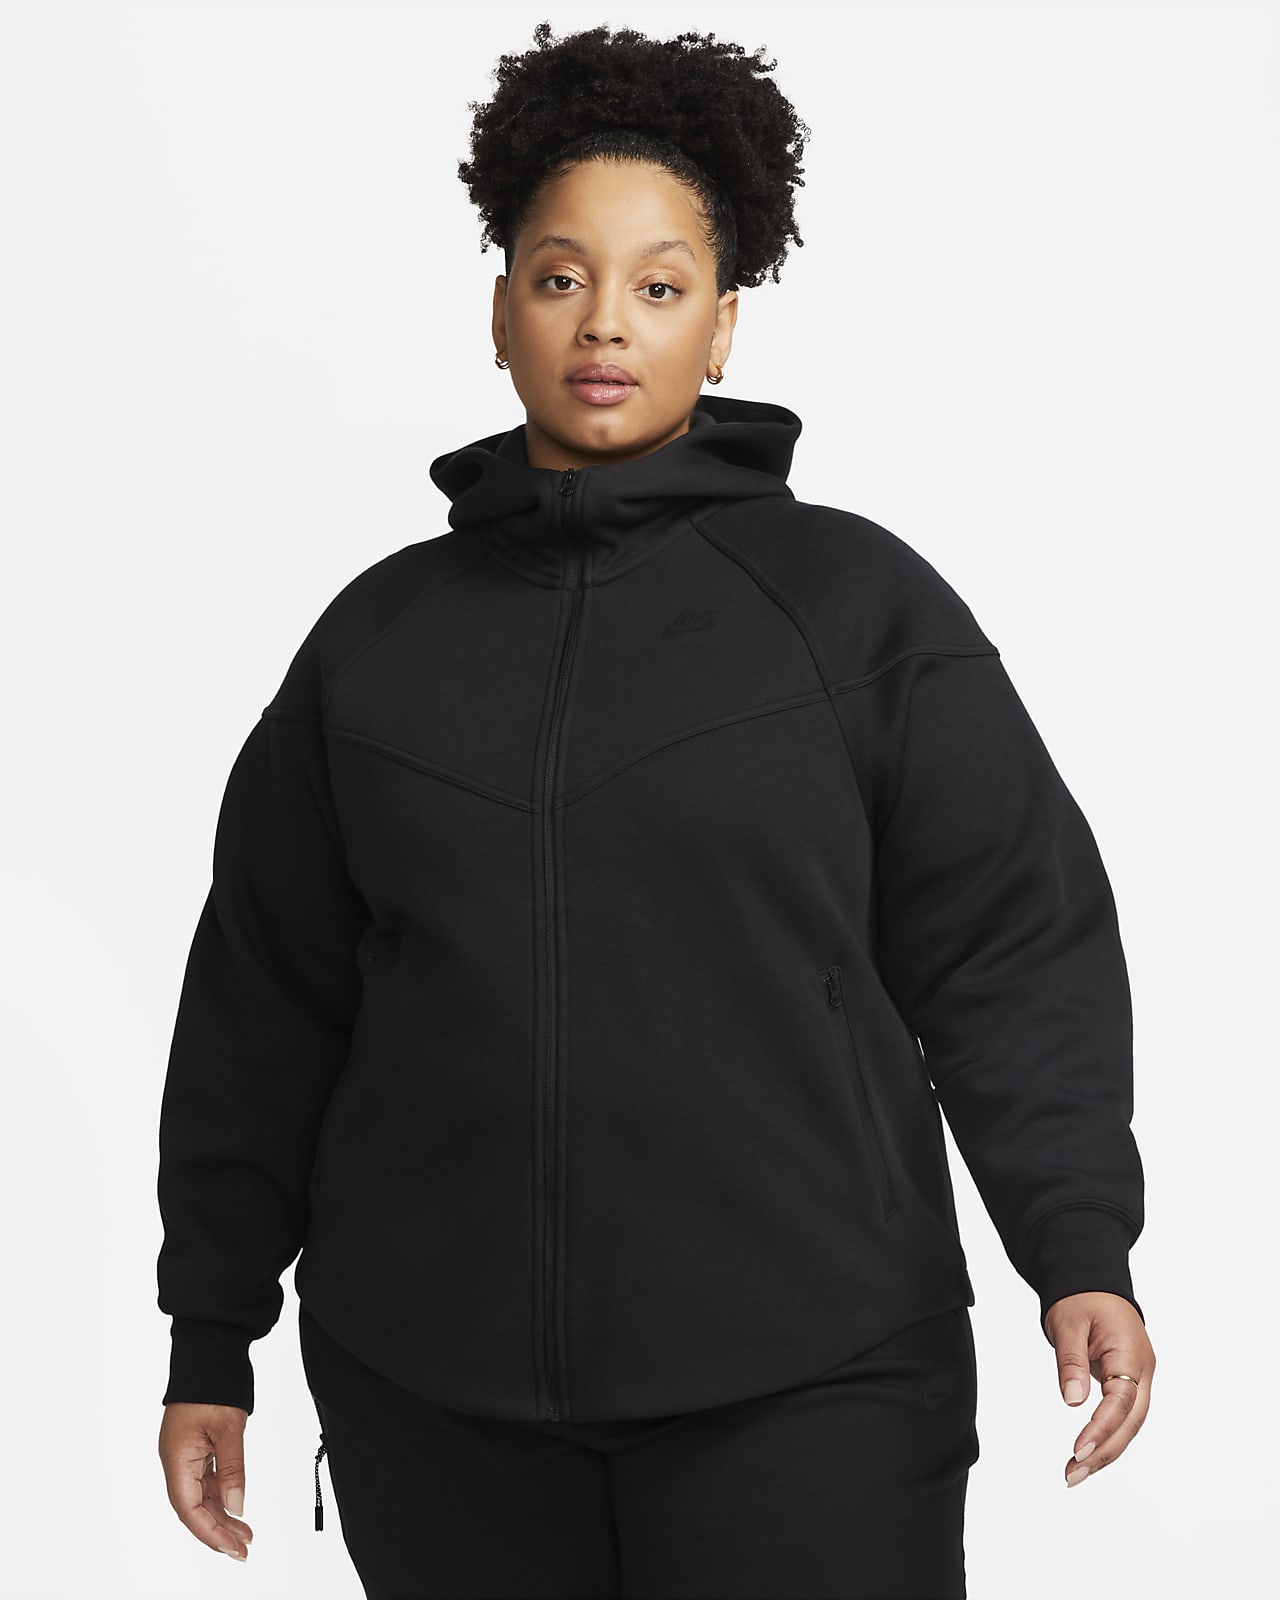 Nike Sportswear Tech Fleece Windrunner Damen-Hoodie mit durchgehendem Reißverschluss (große Größe)